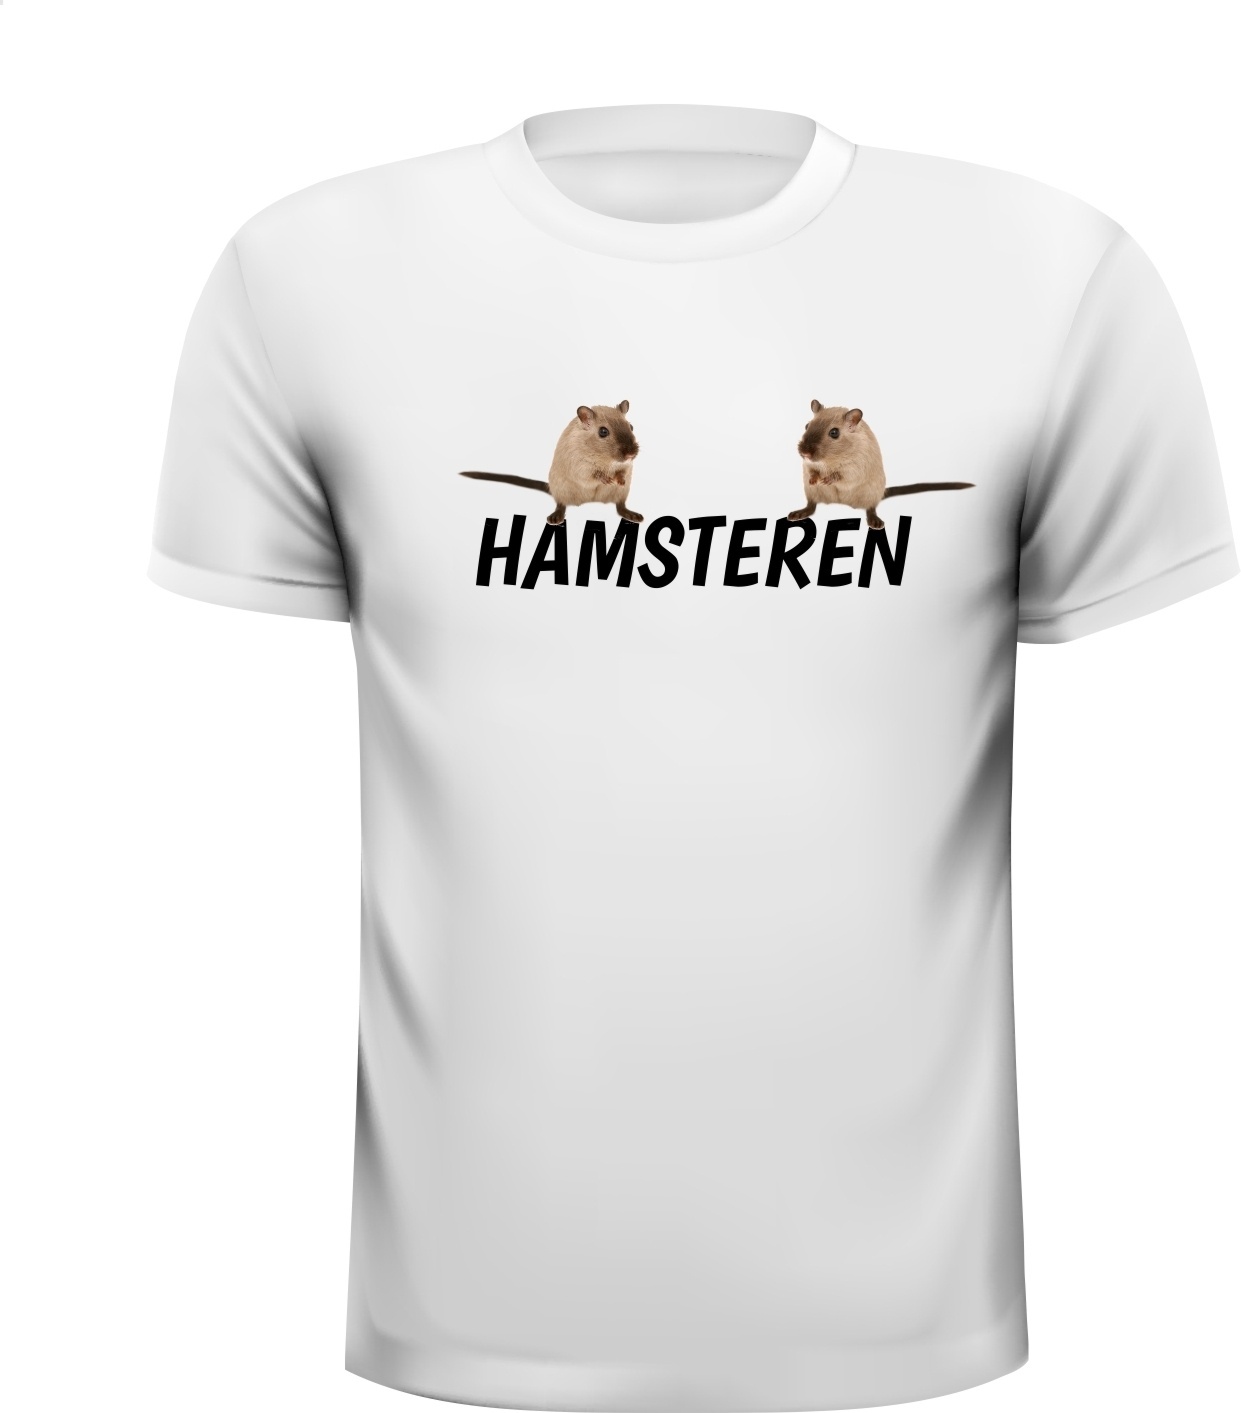 Hamsteren hamster T-shirt